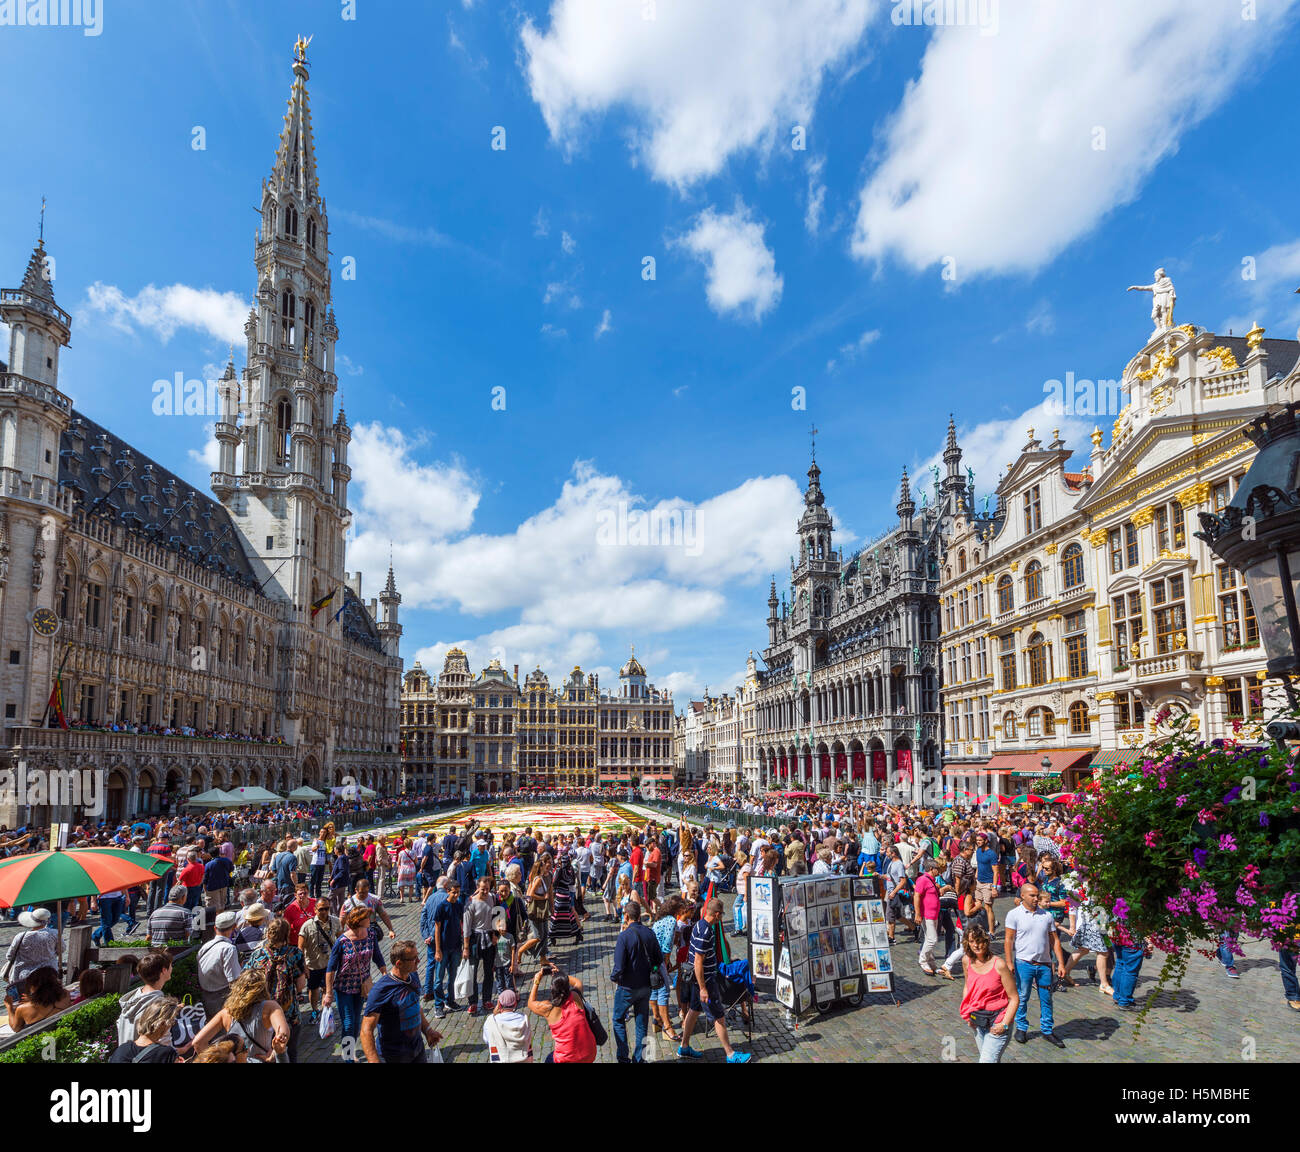 2016-Teppich von Blumen auf der Grand Place (Grote Markt) mit dem Rathaus auf der linken Seite, Brüssel, Belgien. Stockfoto